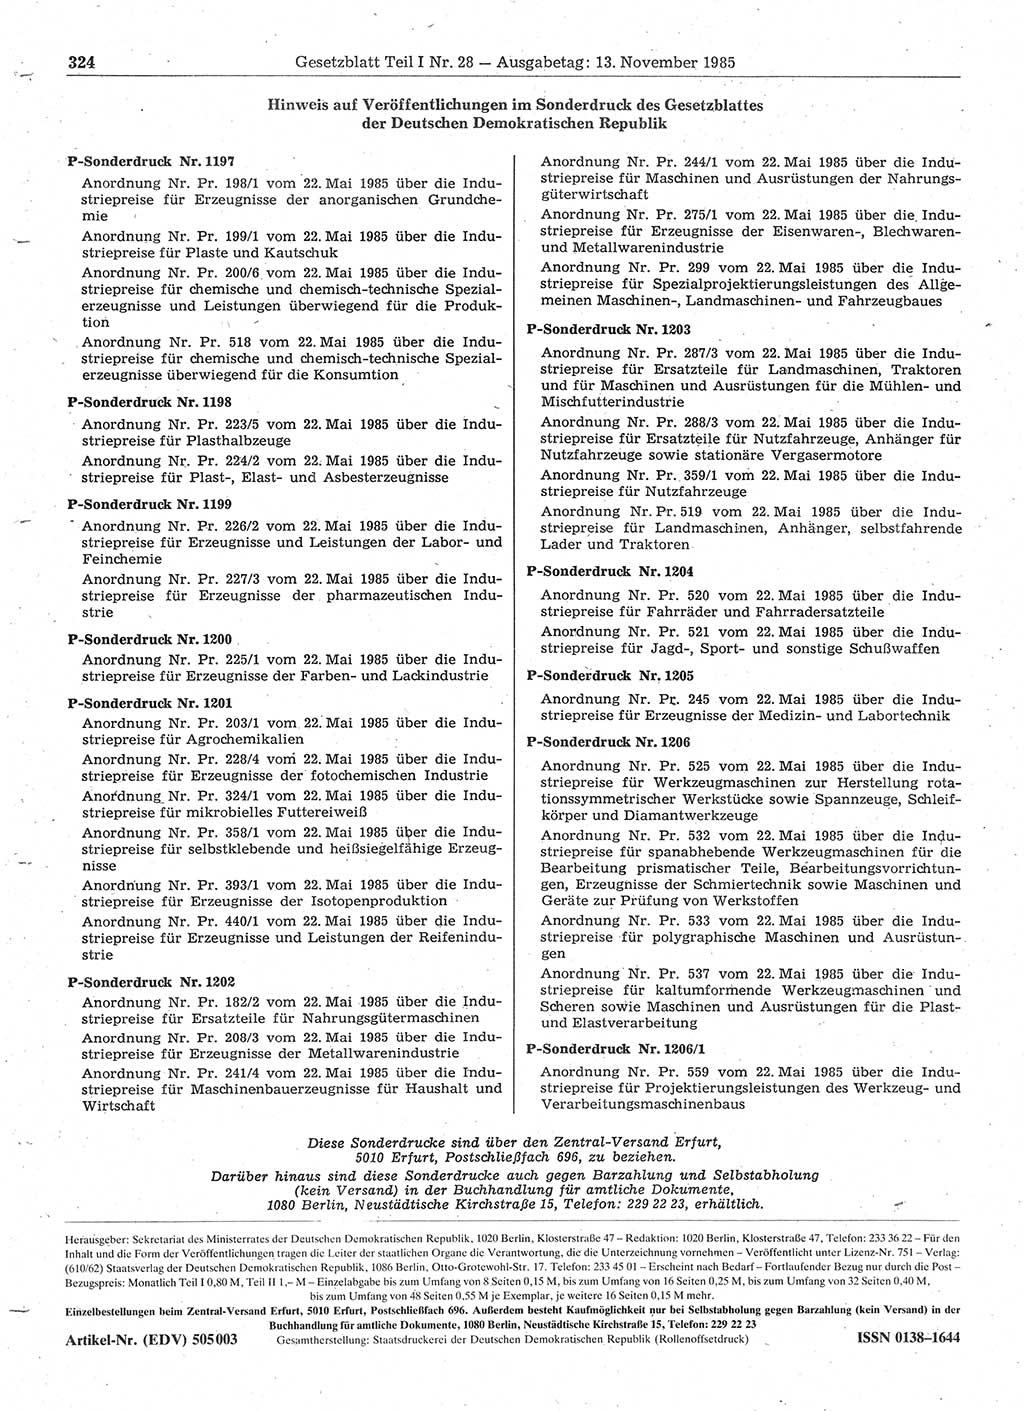 Gesetzblatt (GBl.) der Deutschen Demokratischen Republik (DDR) Teil Ⅰ 1985, Seite 324 (GBl. DDR Ⅰ 1985, S. 324)